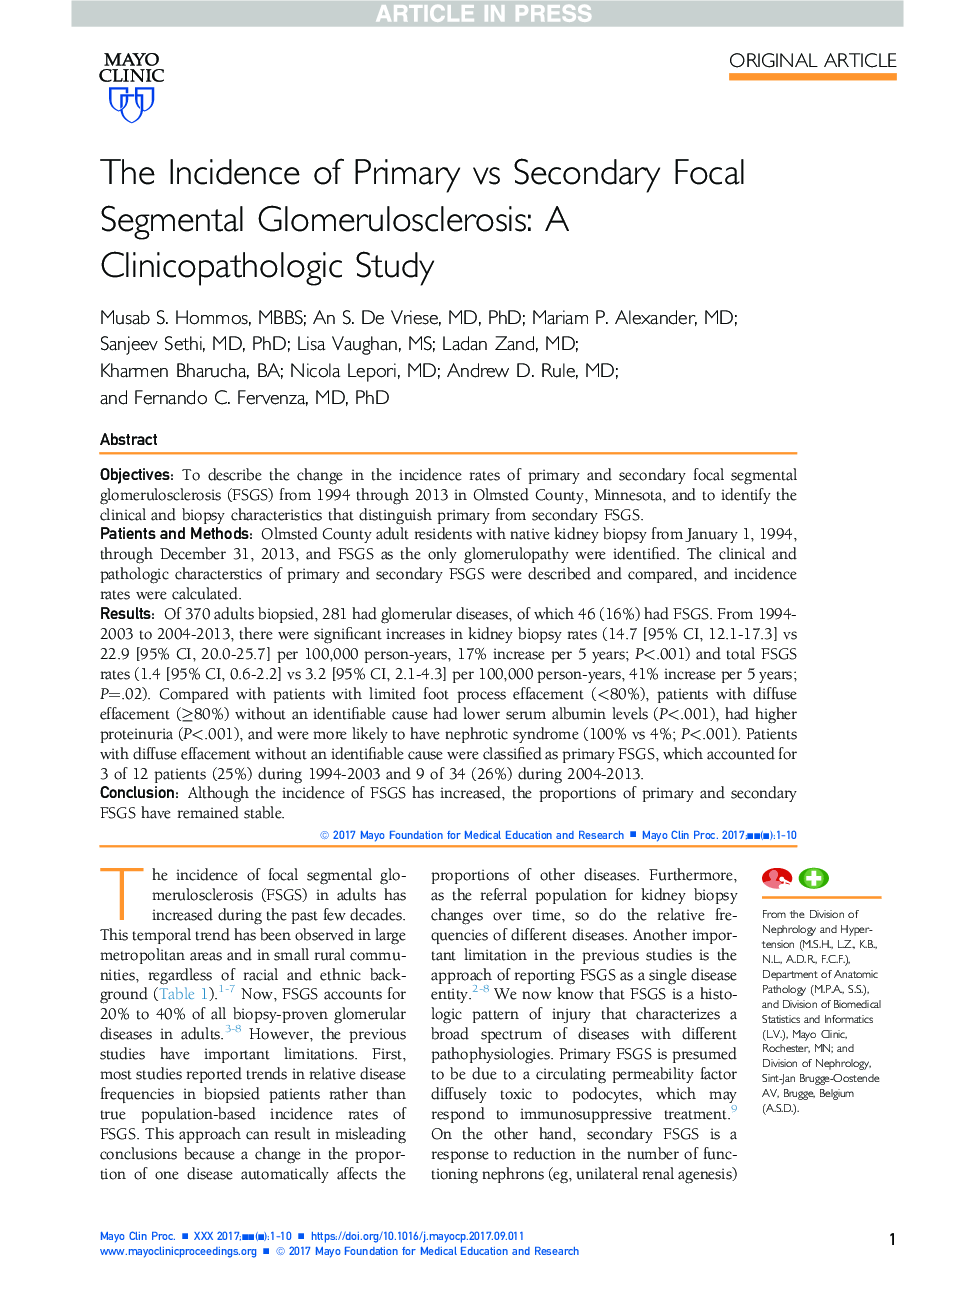 بروز ابتلا به گلومرول اسکلروز بخش مرکزی ثانویه: یک مطالعه کلینیکوپاتولوژیک 